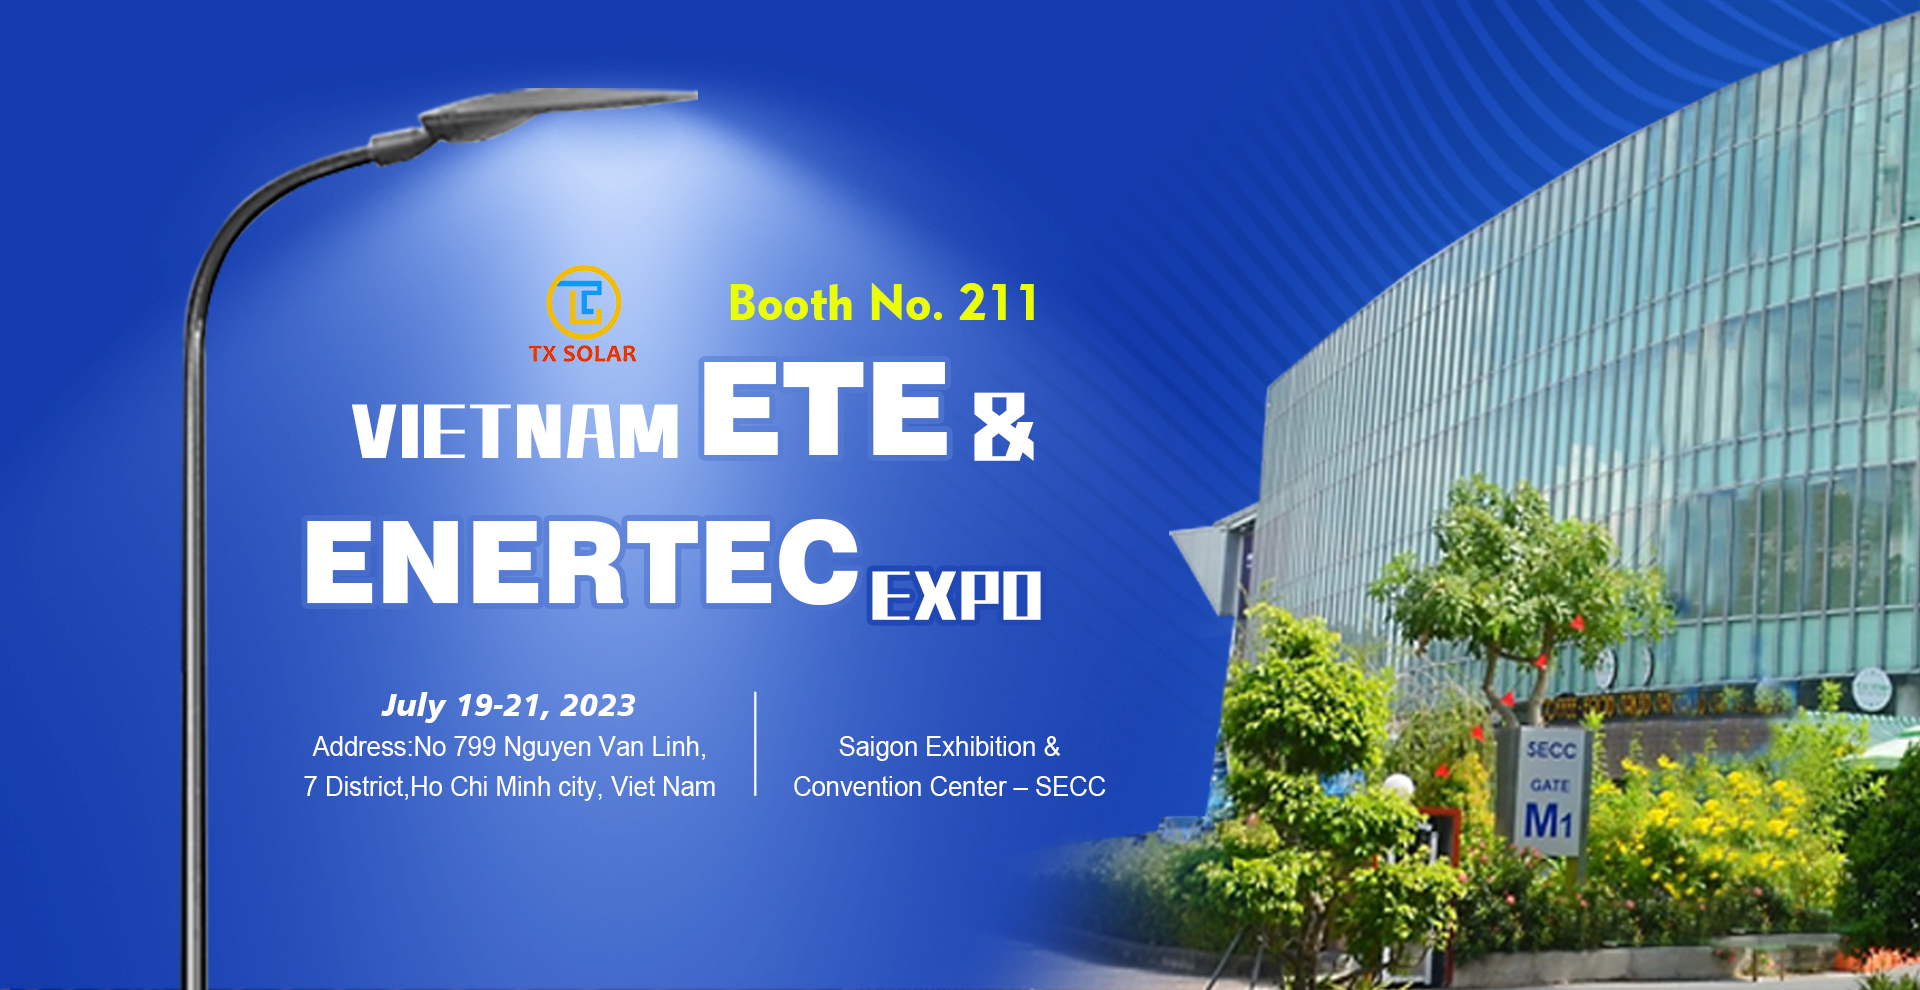 VIETNAM ETE ENERTEC EXPO